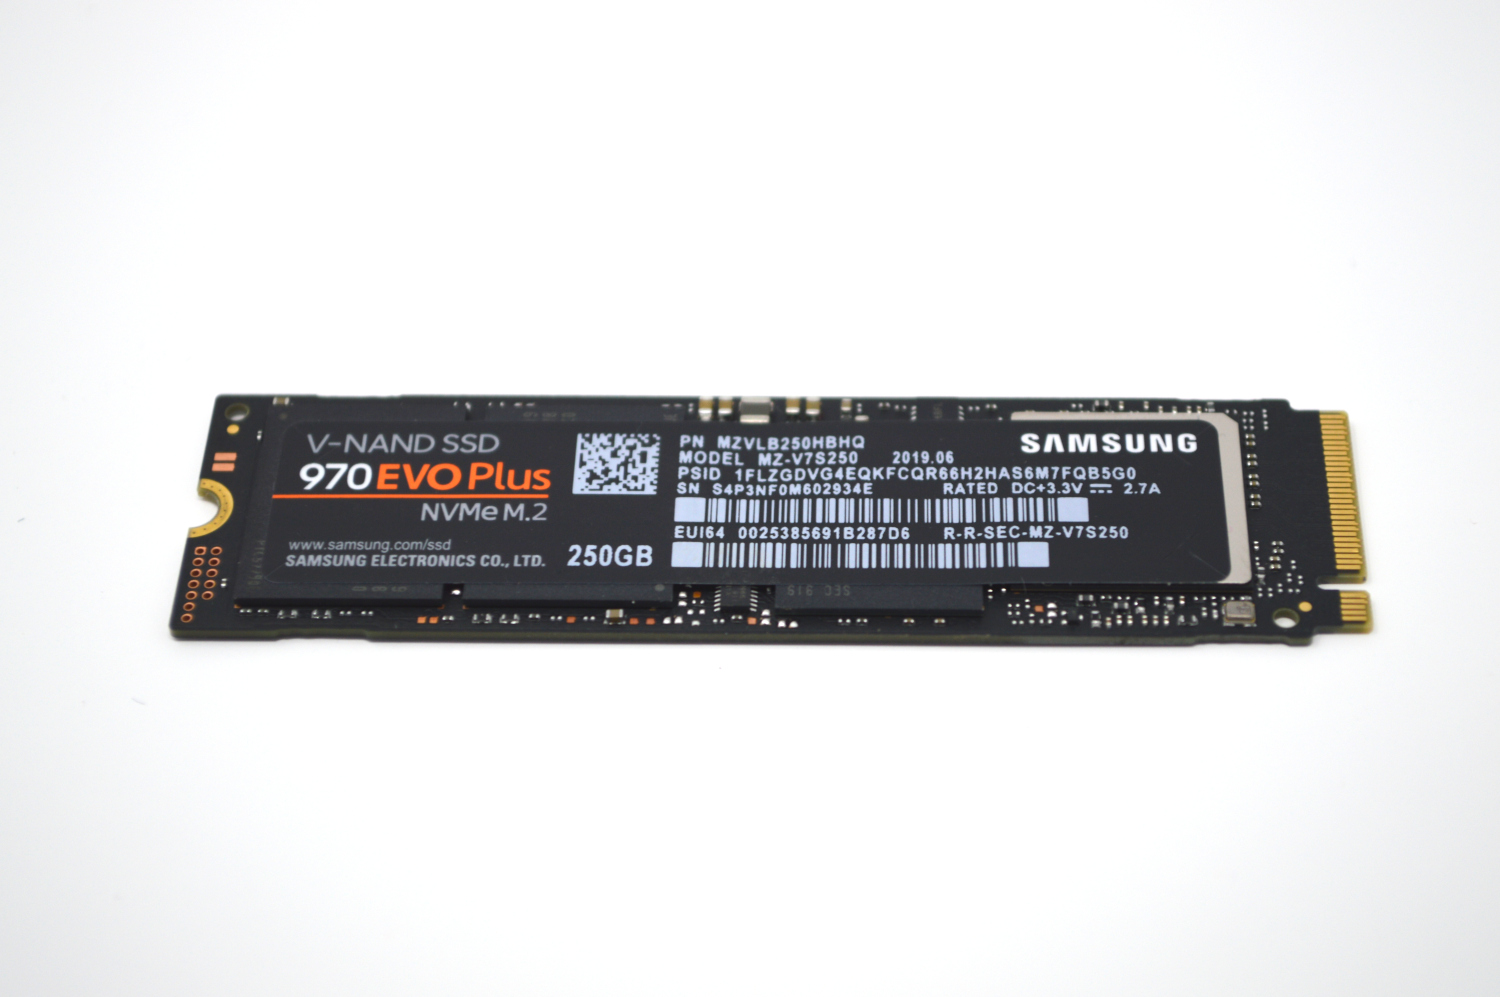 Uafhængighed nødvendighed Mindful Samsung 970 EVO Plus 250GB NVMe SSD Review - ServeTheHome